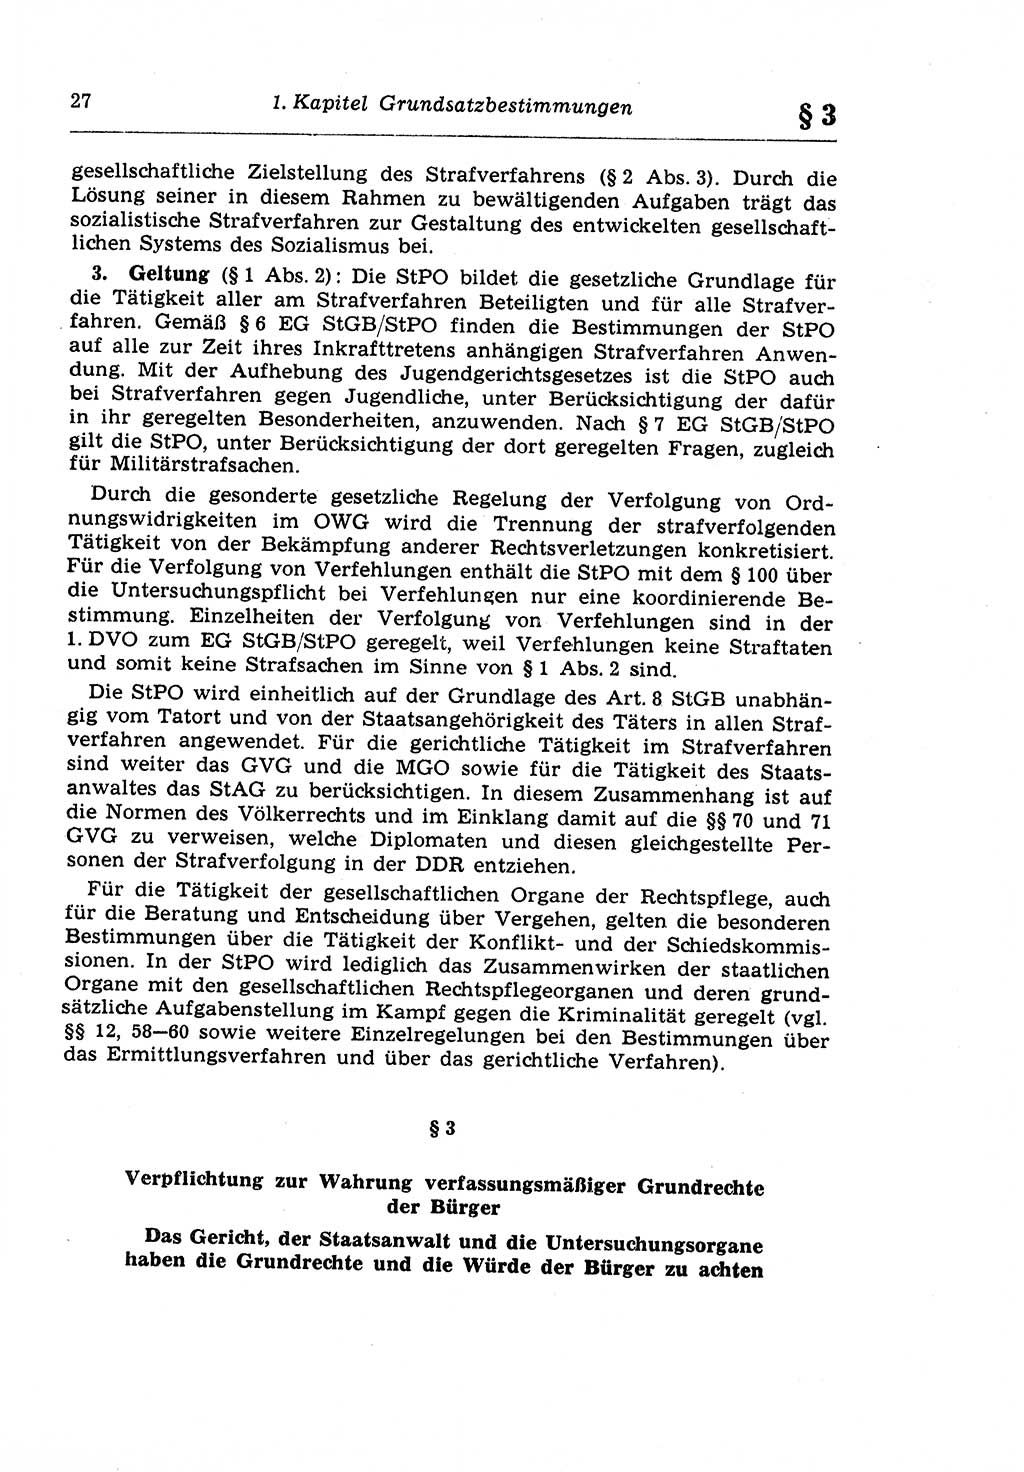 Strafprozeßrecht der DDR (Deutsche Demokratische Republik), Lehrkommentar zur Strafprozeßordnung (StPO) 1968, Seite 27 (Strafprozeßr. DDR Lehrkomm. StPO 19688, S. 27)